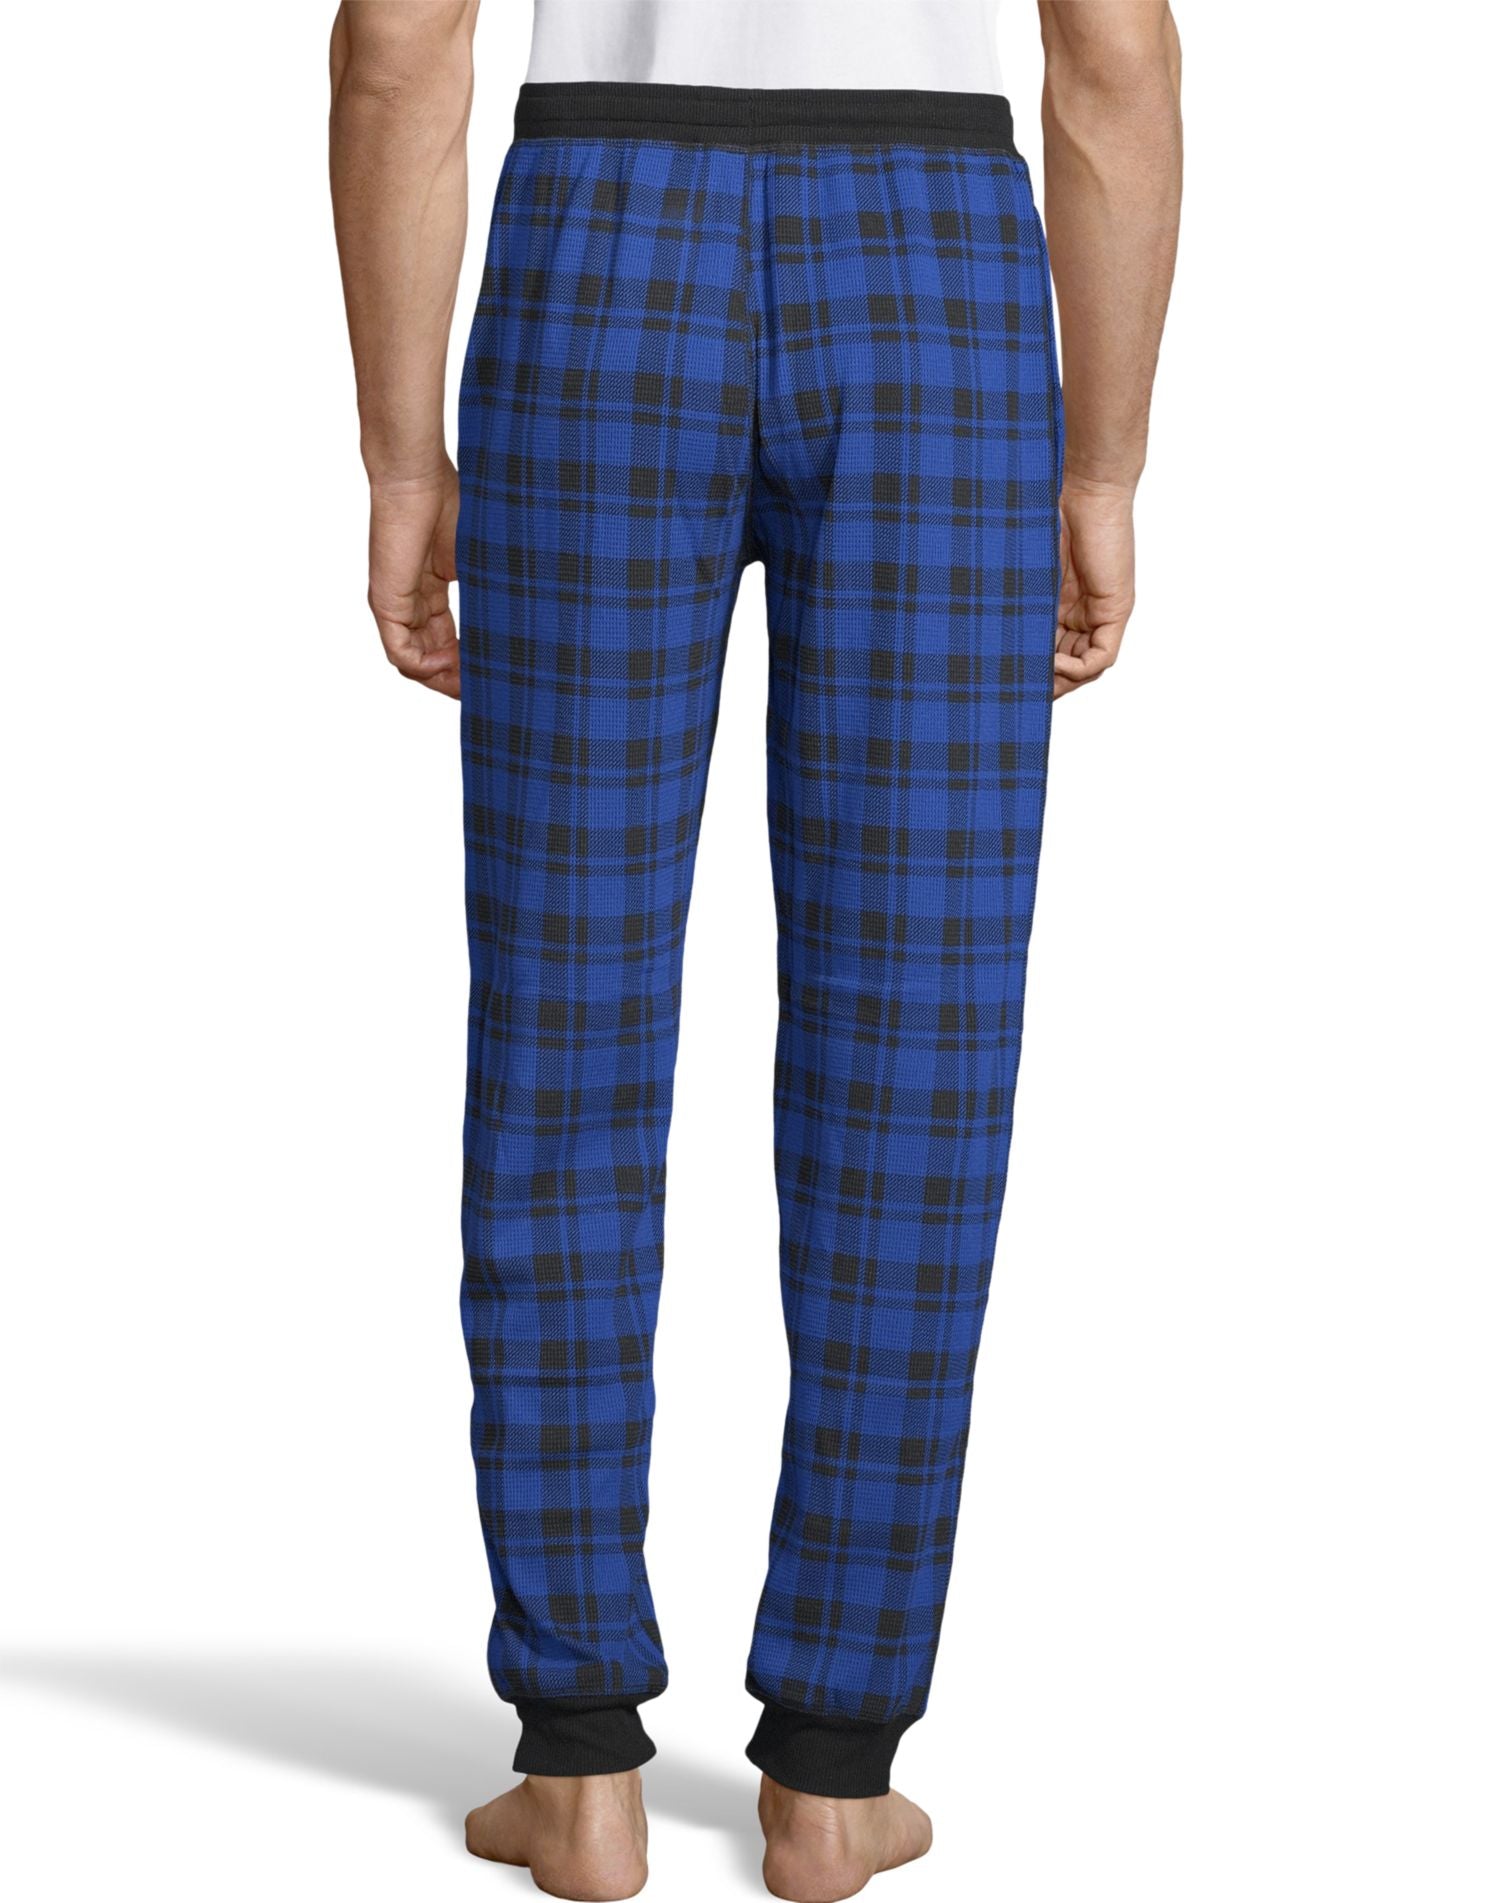 Cuffed Waffle Knit Pyjama Pants